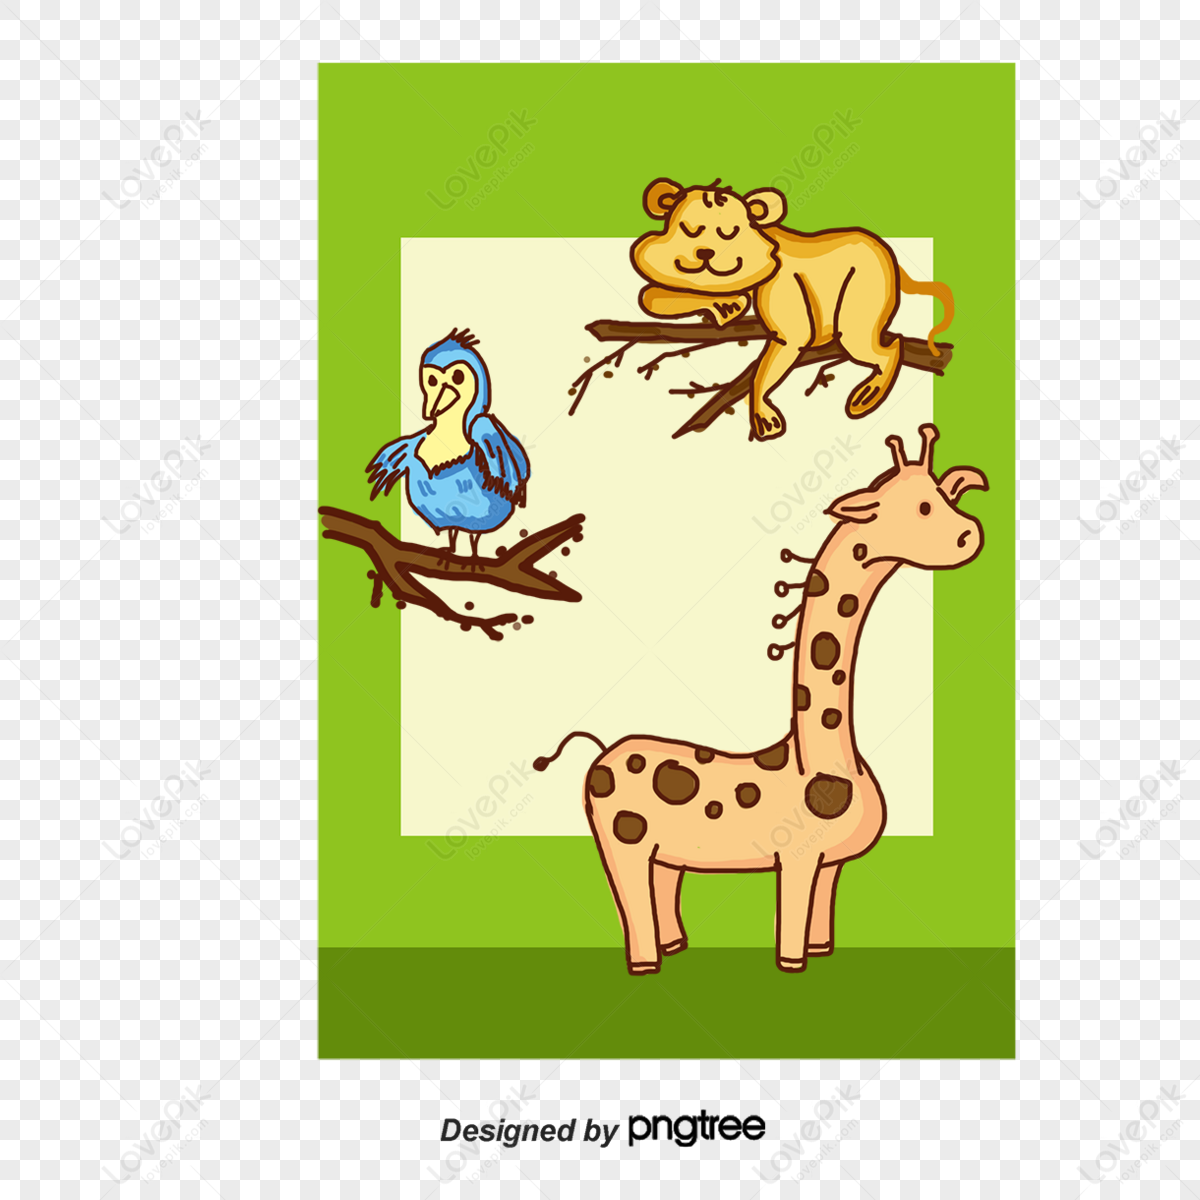 Diferentes Pães Macaco Personagem Animal Selvagem Zoológico Macaco Chimpanzé  Ilustração Vetorial. Royalty Free SVG, Cliparts, Vetores, e Ilustrações  Stock. Image 78034124